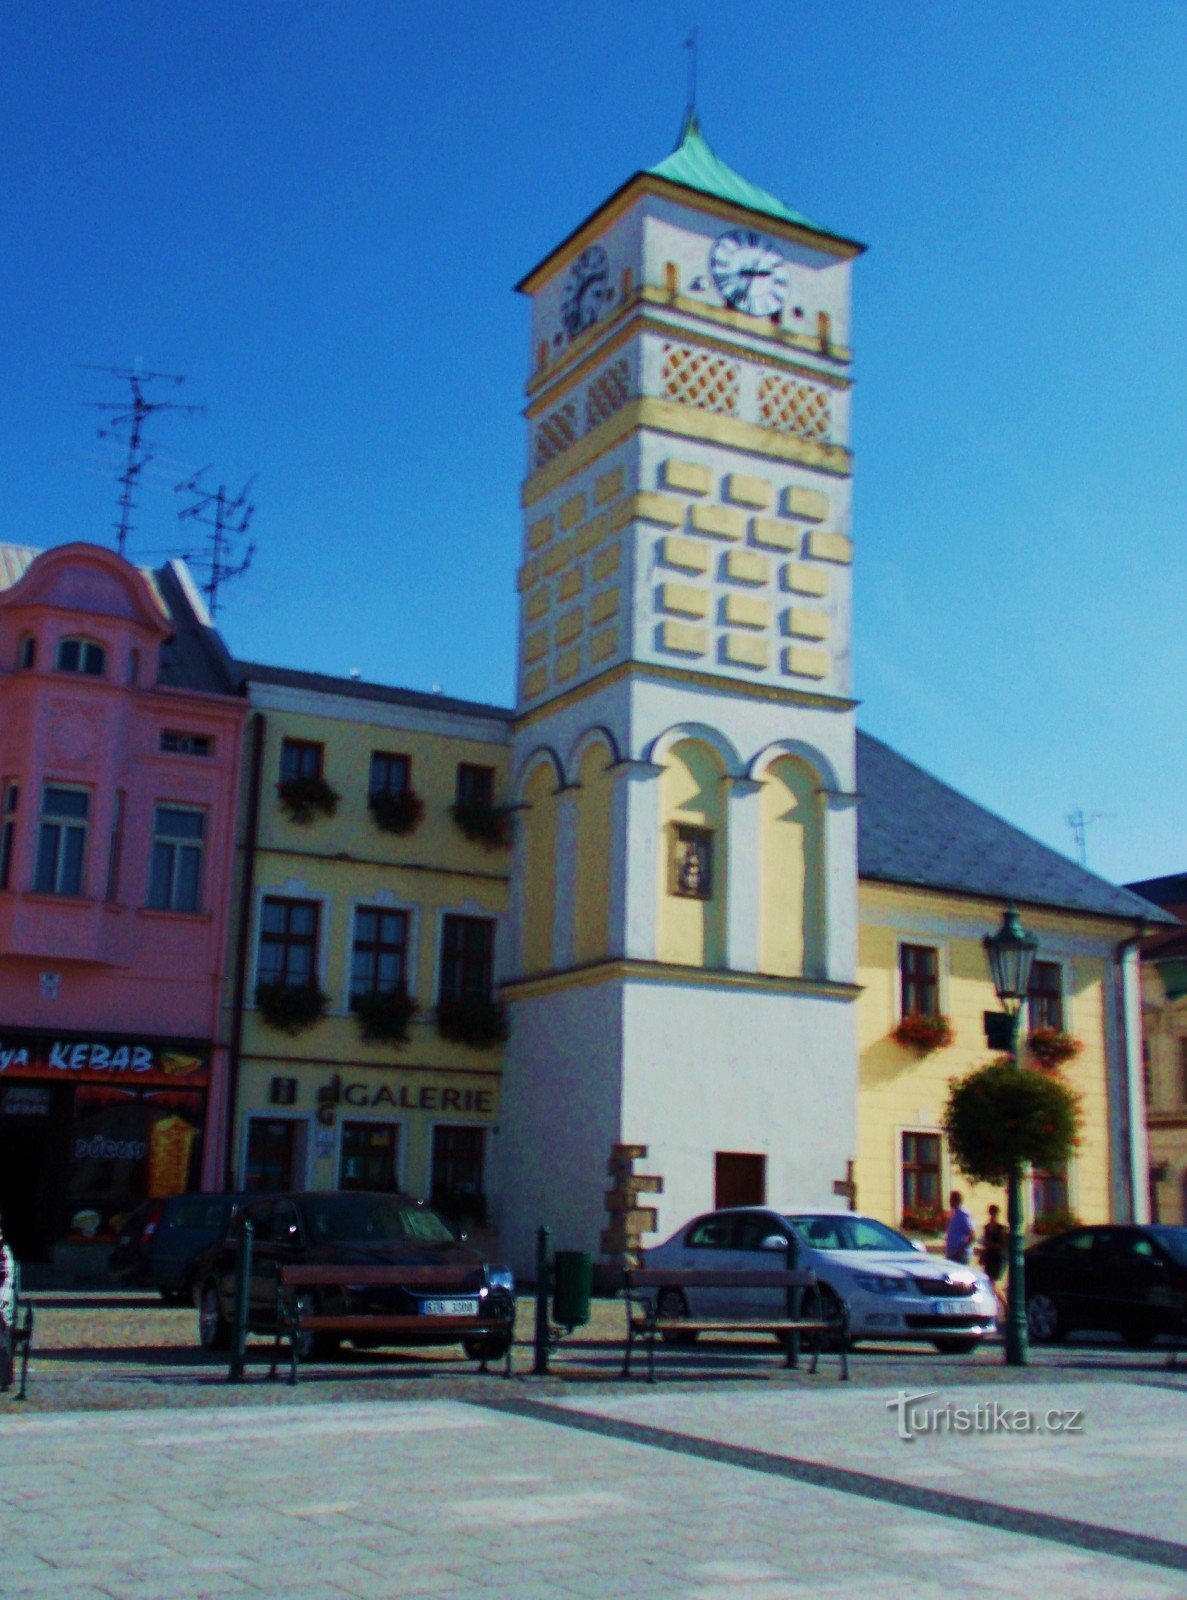 Здание ратуши - доминанта площади Масарика в Карвине.